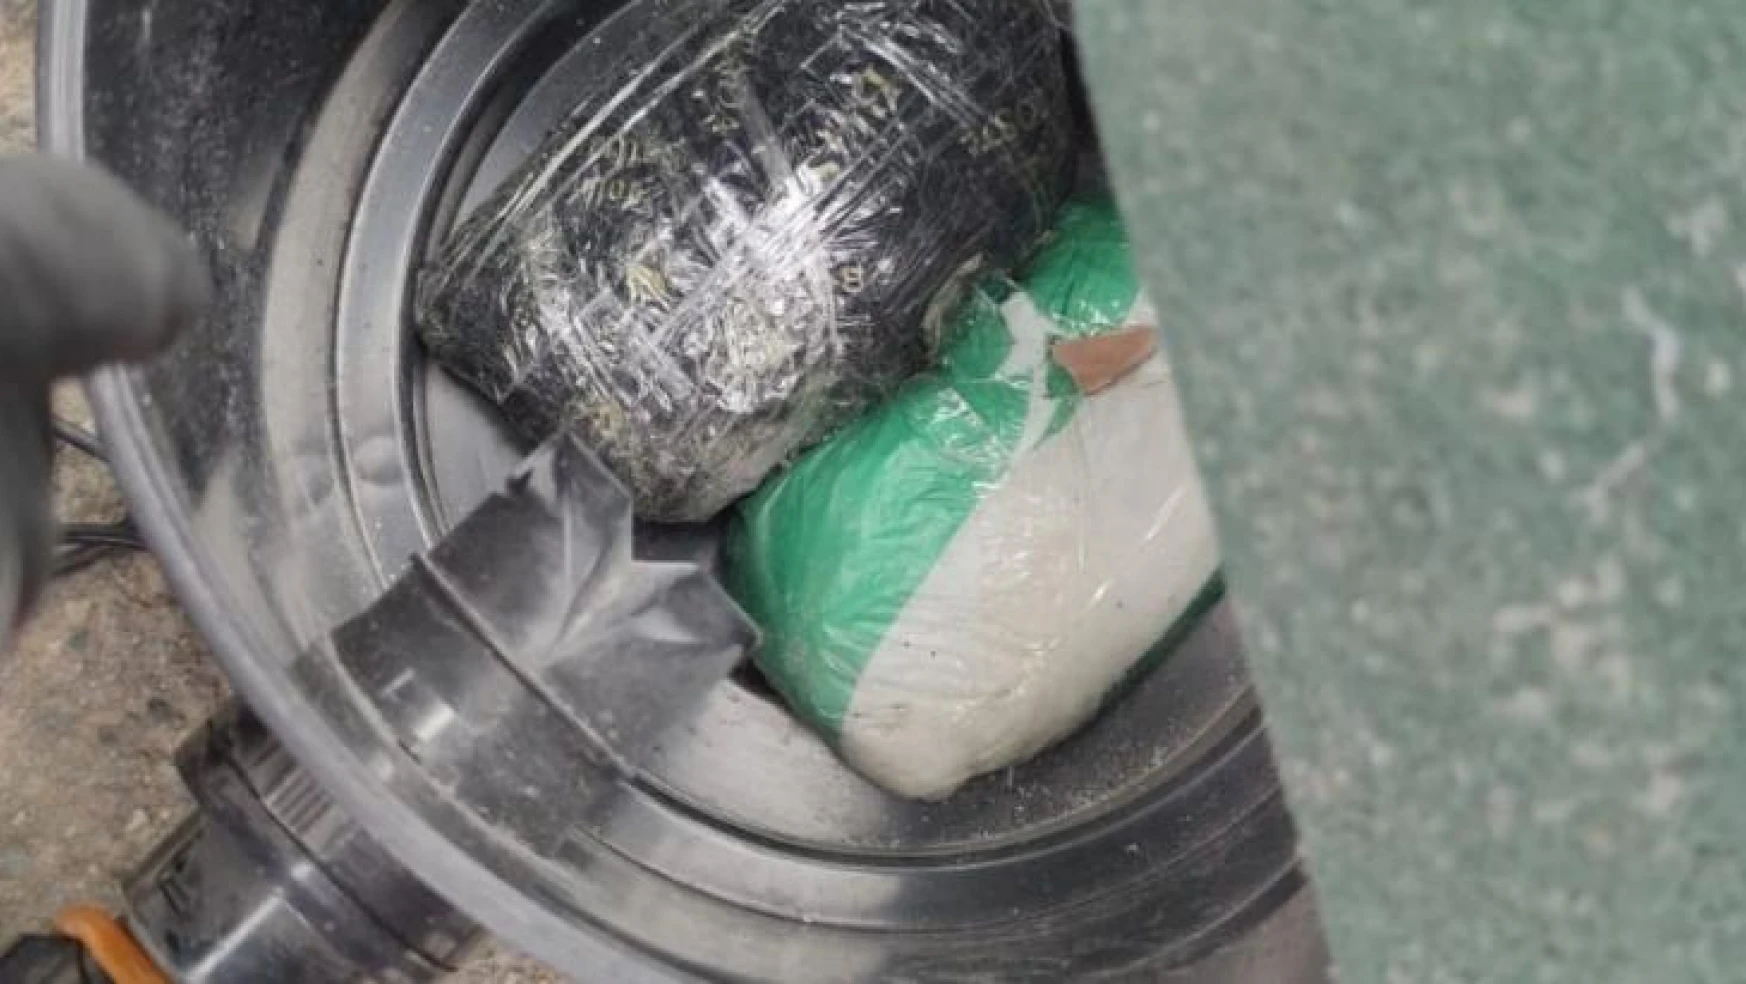 Rize'de arama yapılan aracın bagajındaki elektrikli süpürgeden uyuşturucu çıktı